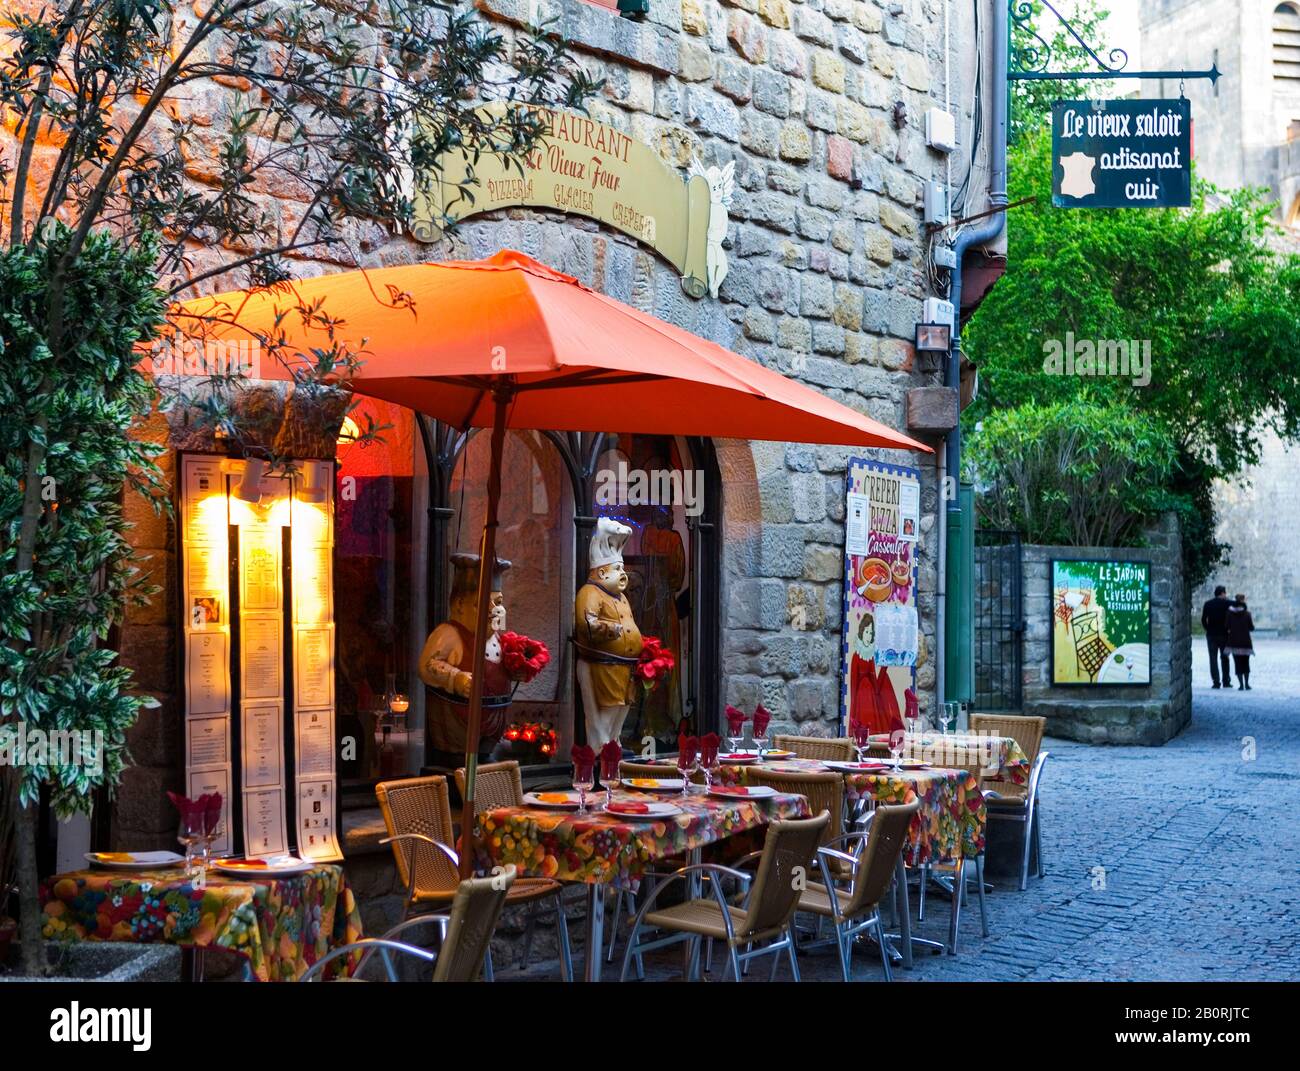 Patrimoine mondial de l'UNESCO, cité fortifiée médiévale, Restaurant dans la vieille ville, Carcassonne, Département Aude, Languedoc-Rouillon, France Banque D'Images